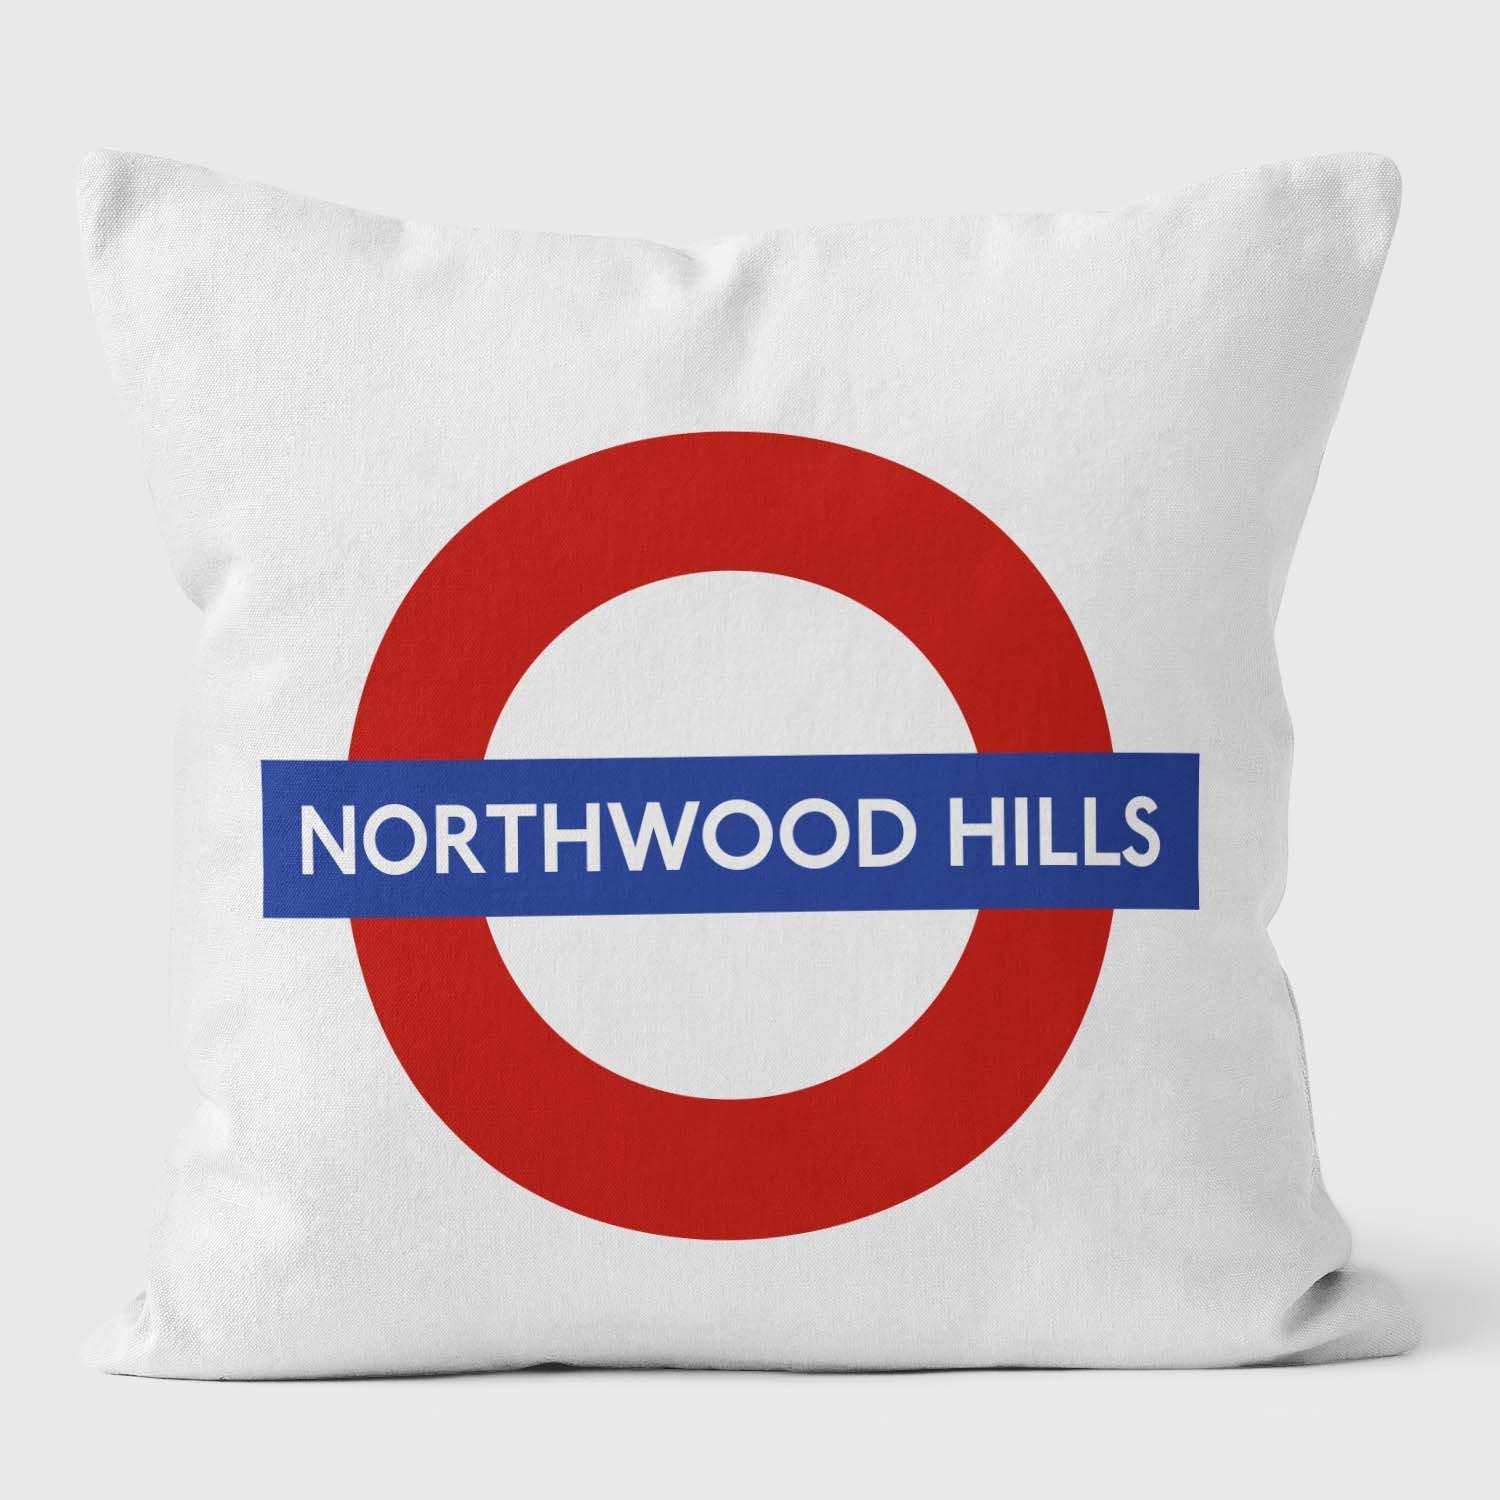 Northwood Hills London Underground Tube Station Roundel Cushion - Handmade Cushions UK - WeLoveCushions